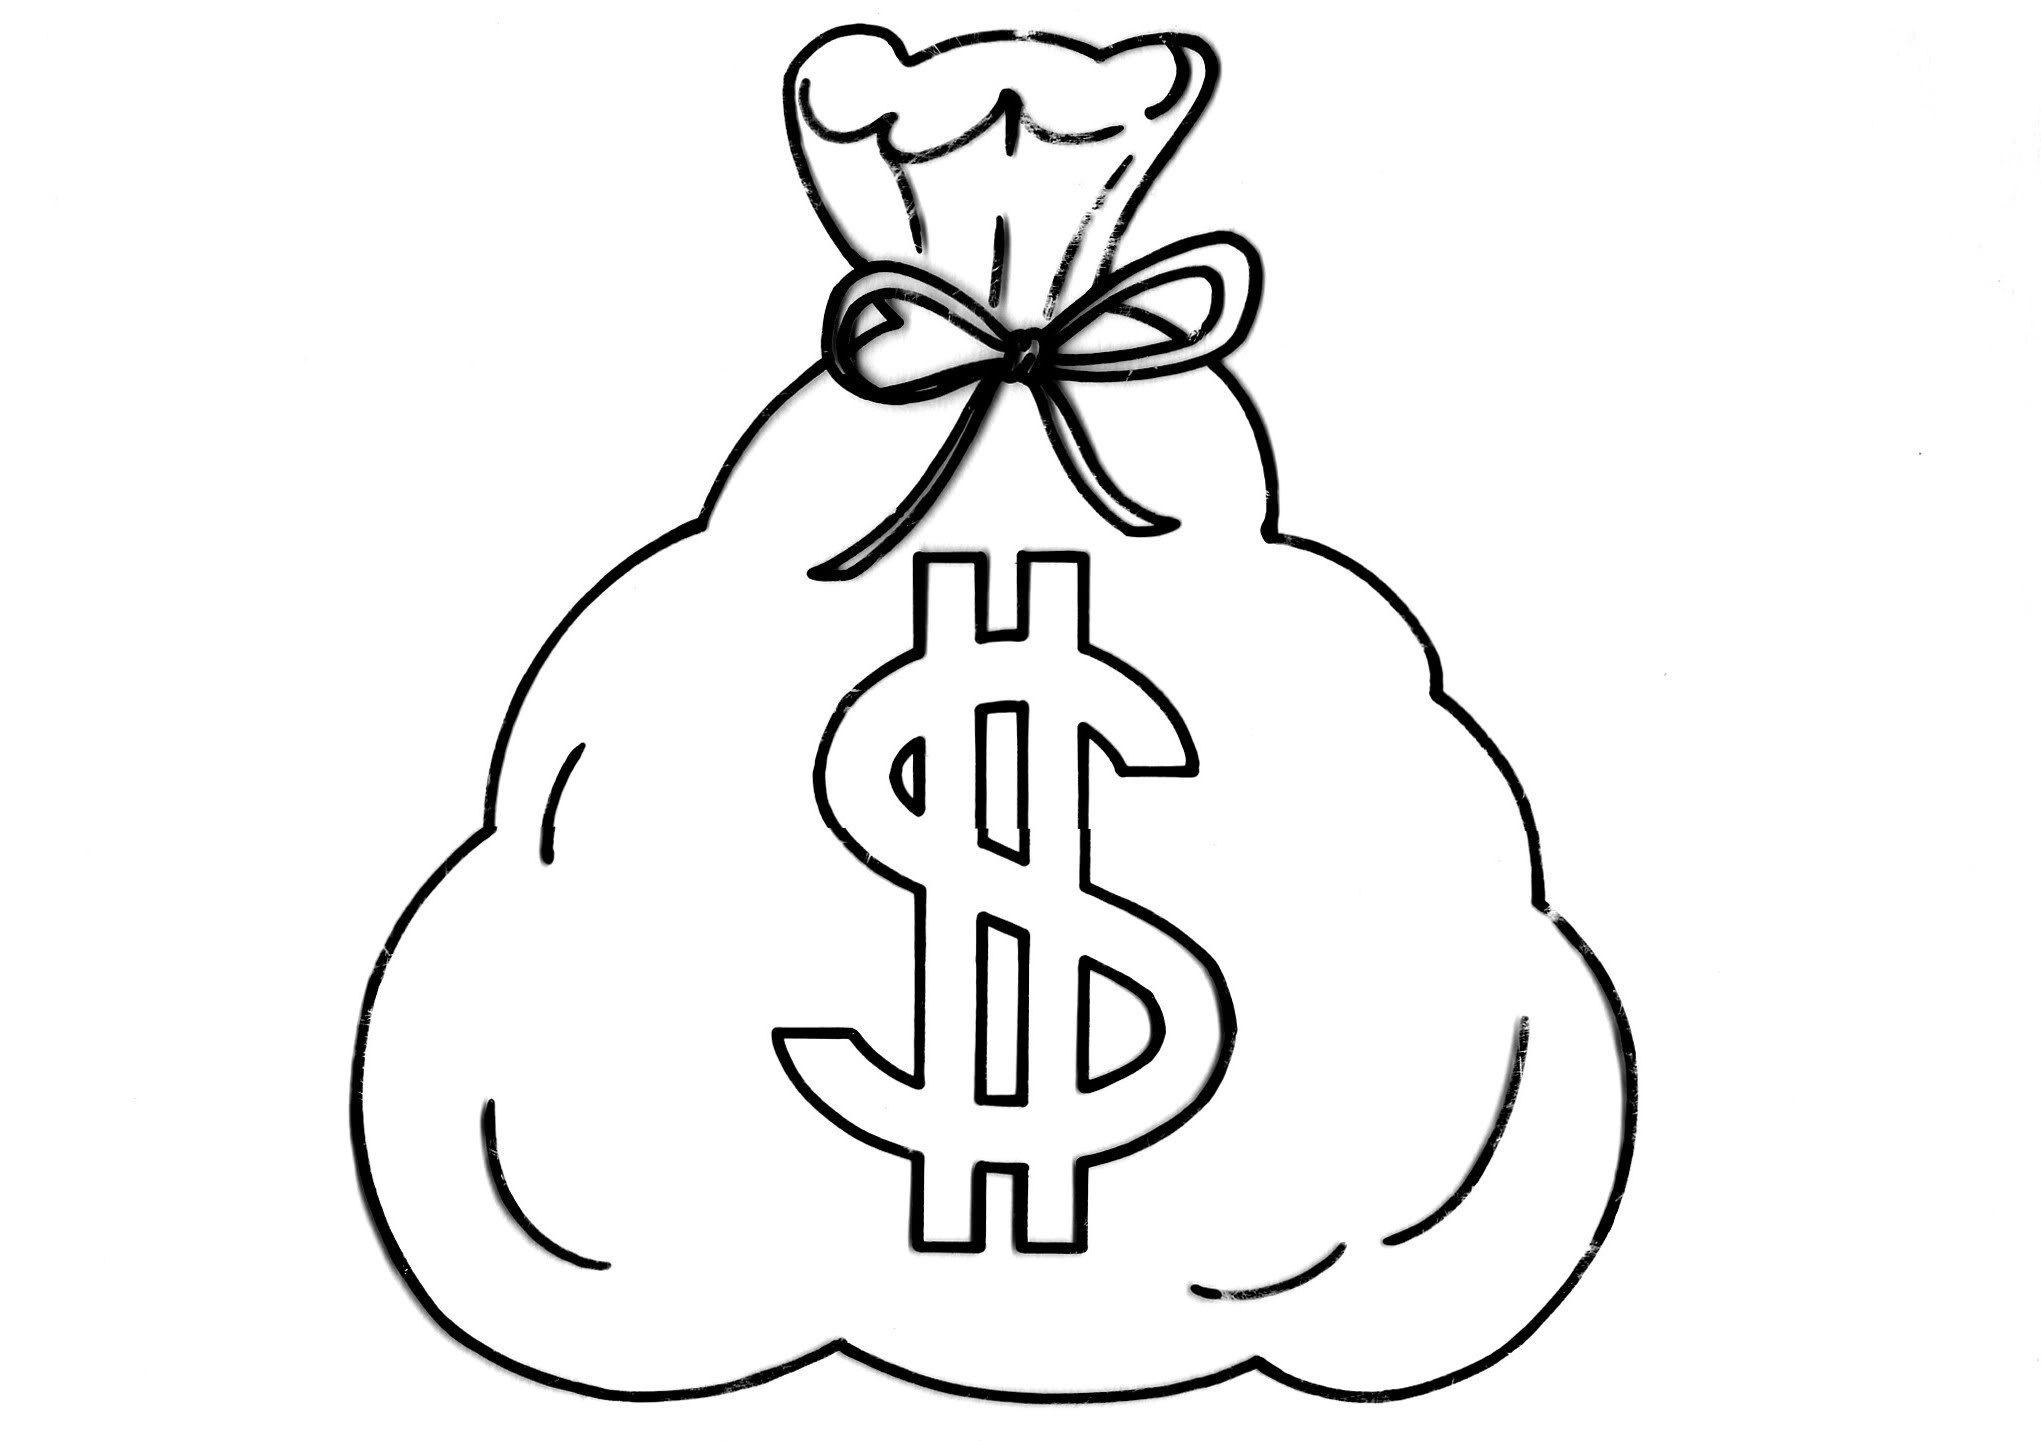 Money Bag Logo - Gene Simmons jeans line for men and women